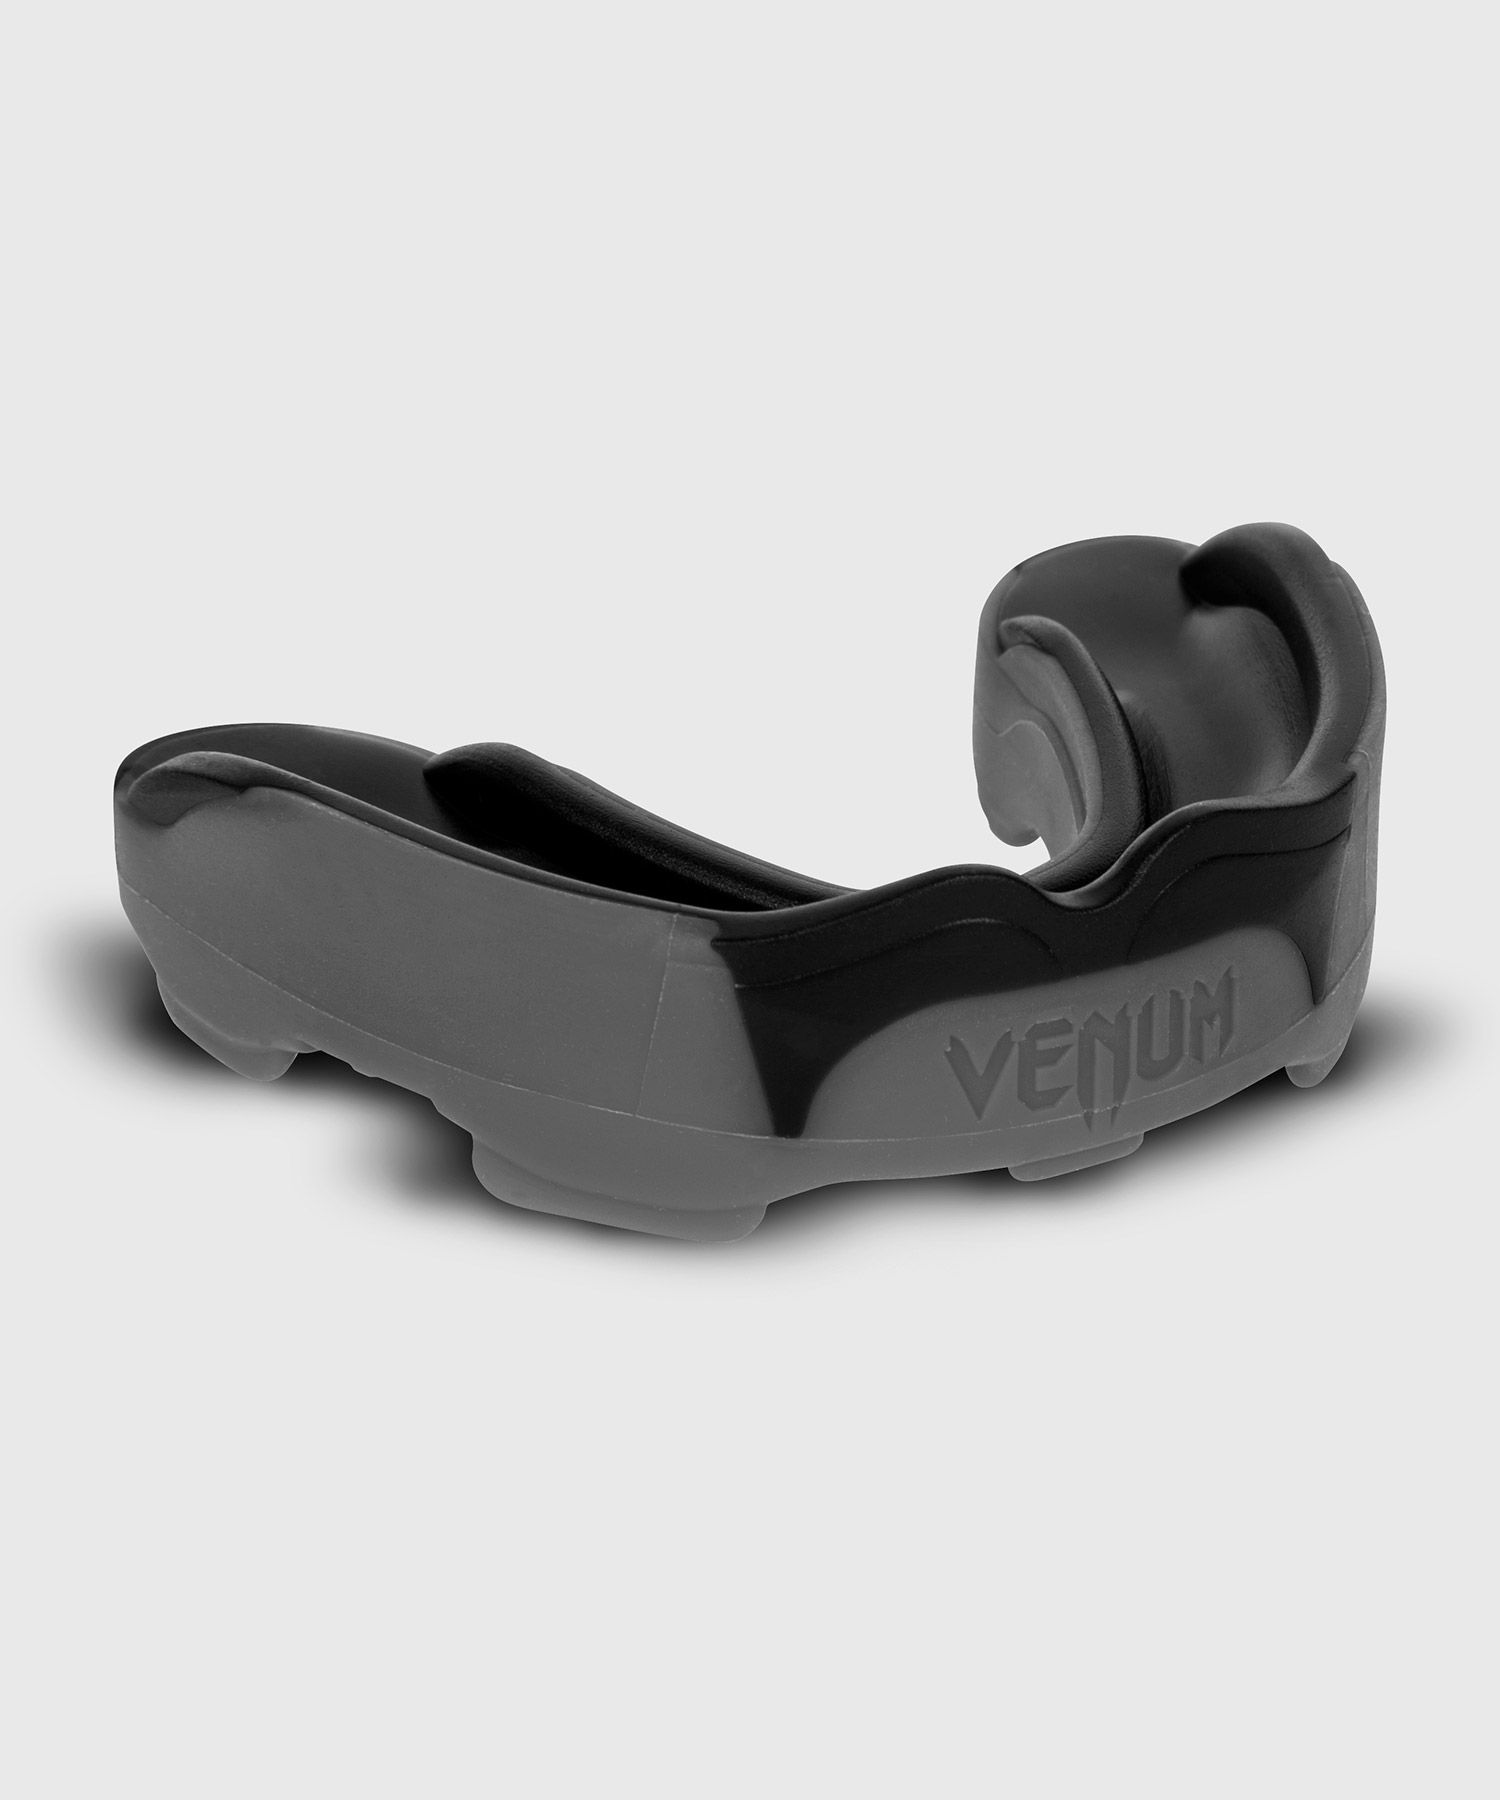 Venum Predator Mouthguard - Grey/Black - Venum.com Europe